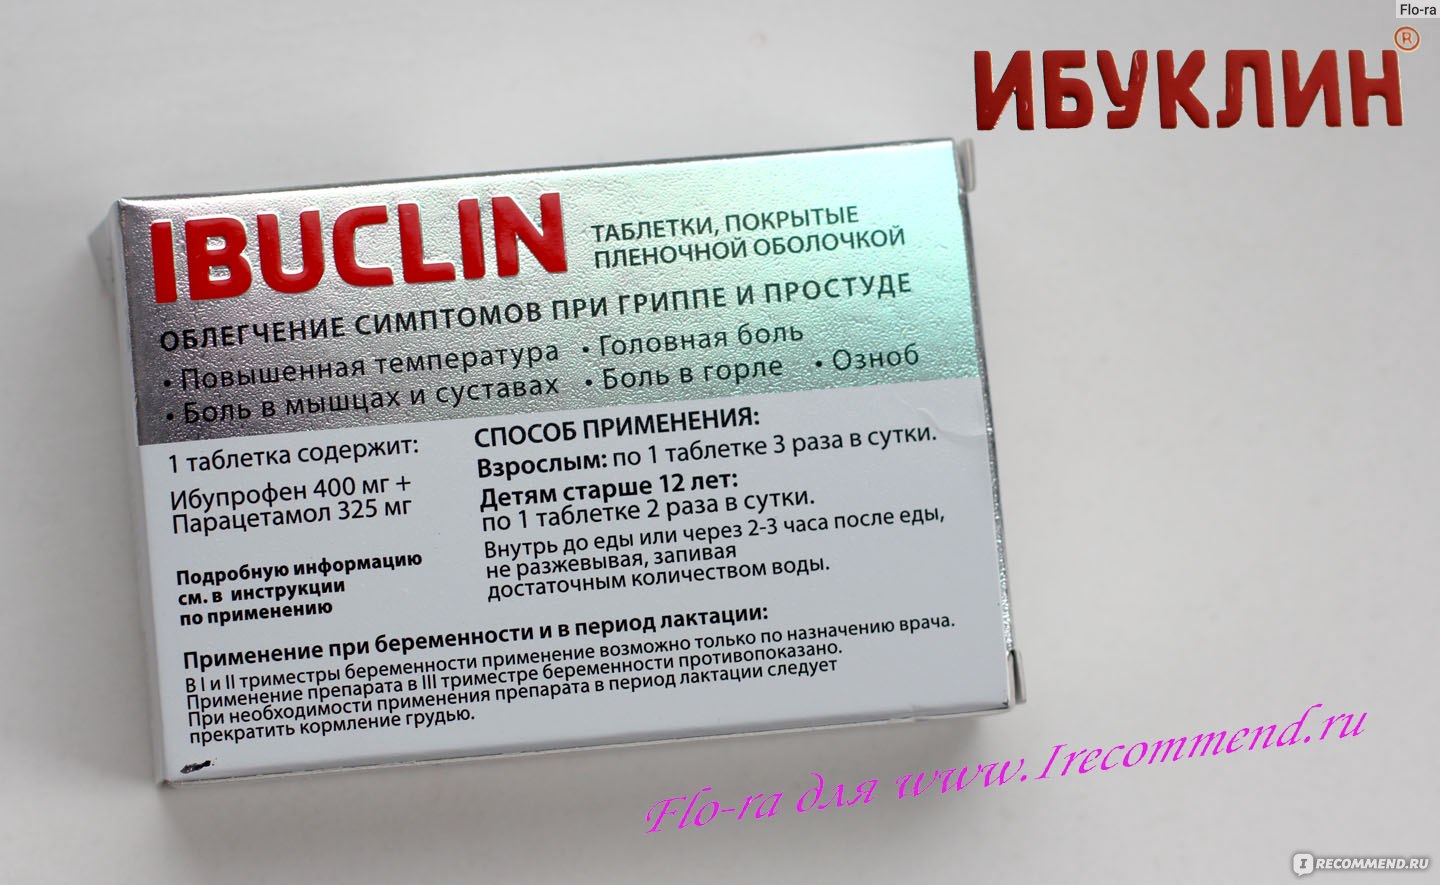 Сколько раз пьют ибуклин. Ибуклин состав препарата таблетки. Ибуклин 400. Жаропонижающие таблетки ибуклин. Ибуклин 300 мг.